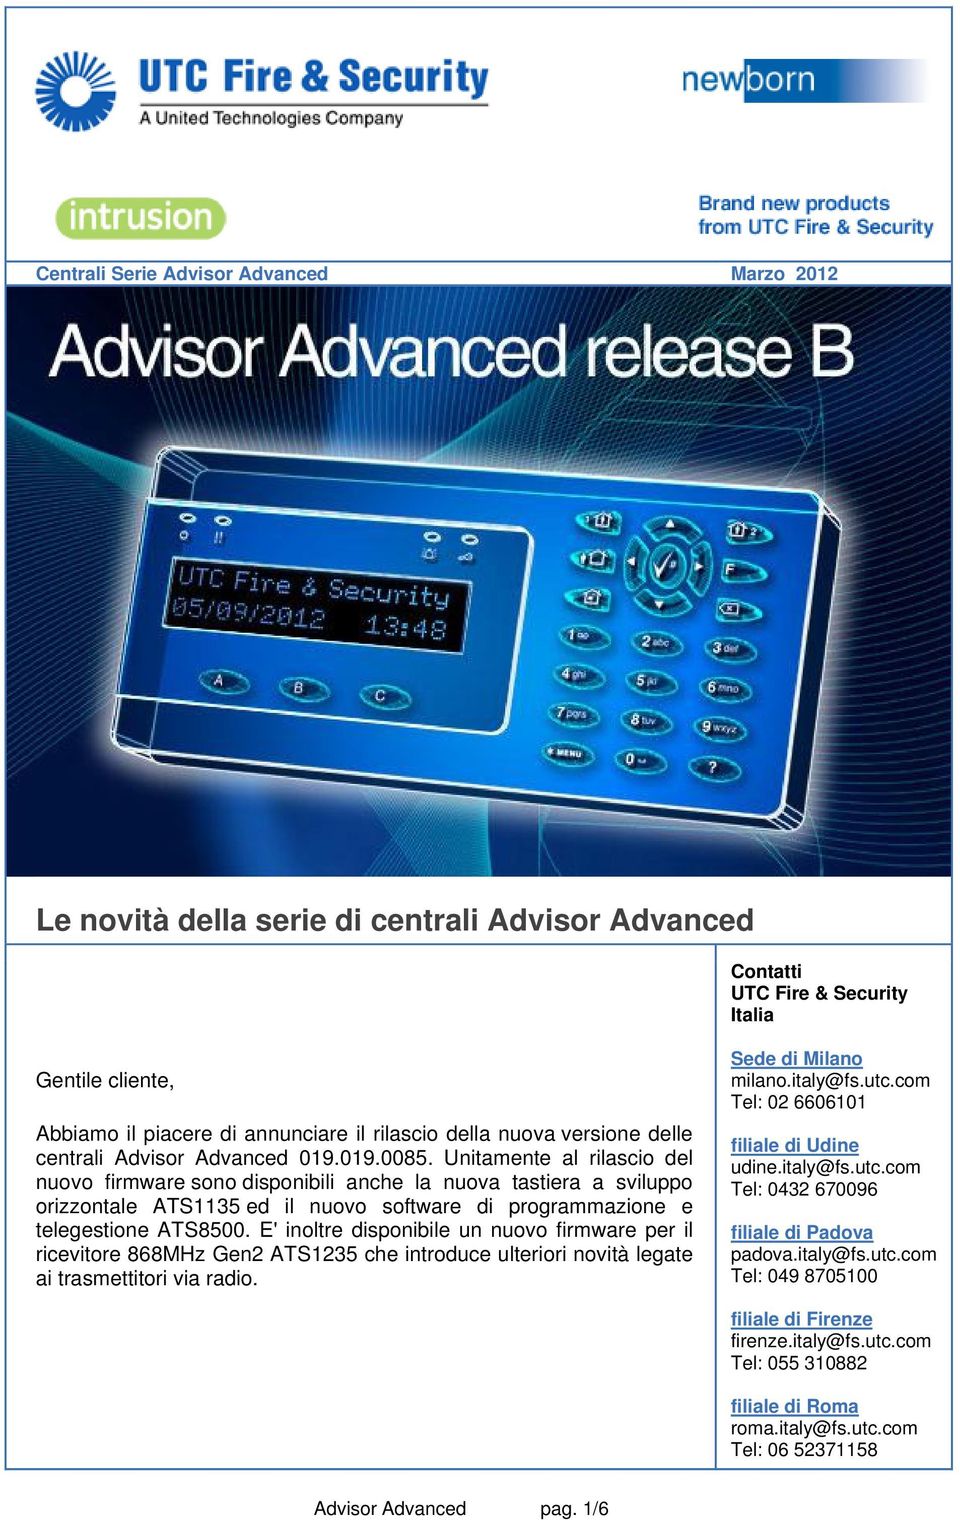 E' inoltre disponibile un nuovo firmware per il ricevitore 868MHz Gen2 ATS1235 che introduce ulteriori novità legate ai trasmettitori via radio. Sede di Milano milano.italy@fs.utc.